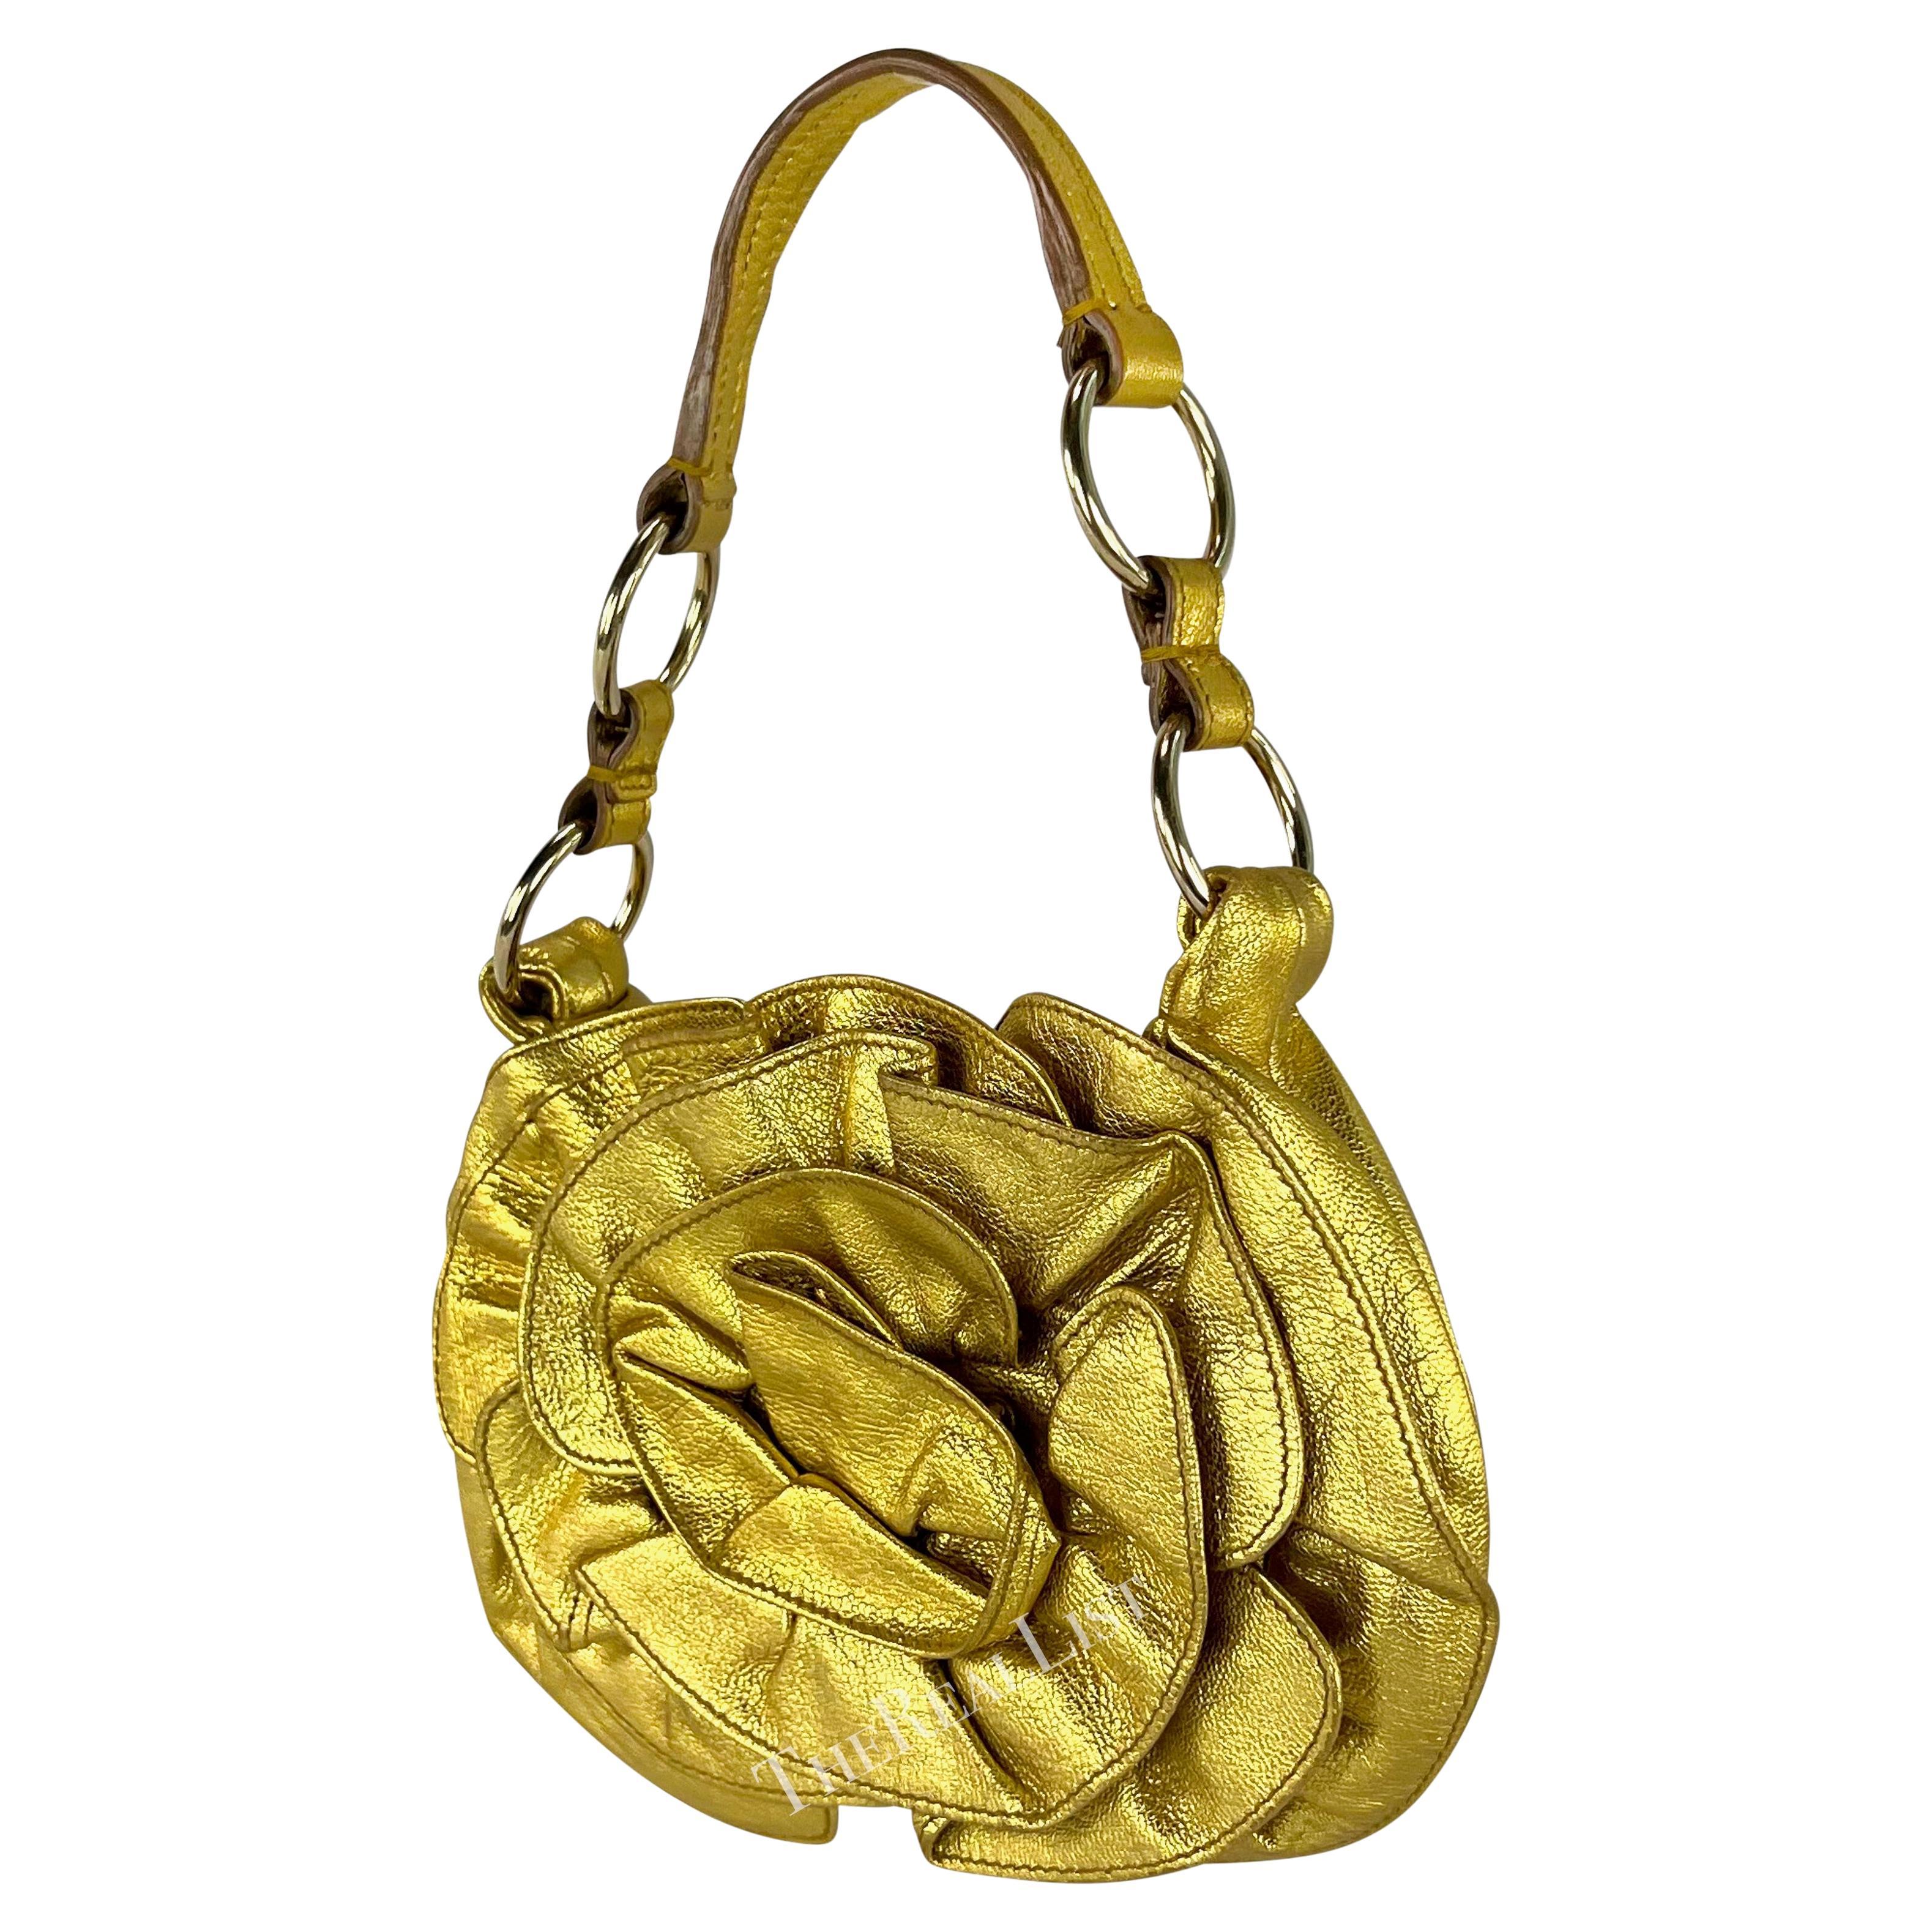 Wir präsentieren eine atemberaubende Yves Saint Laurent Rive Gauche Mini-Tasche aus goldfarbenem Leder, entworfen von Tom Ford in den frühen 2000er Jahren. Diese vollständig aus goldfarbenem Metallic-Leder gefertigte Minitasche ist mit einem